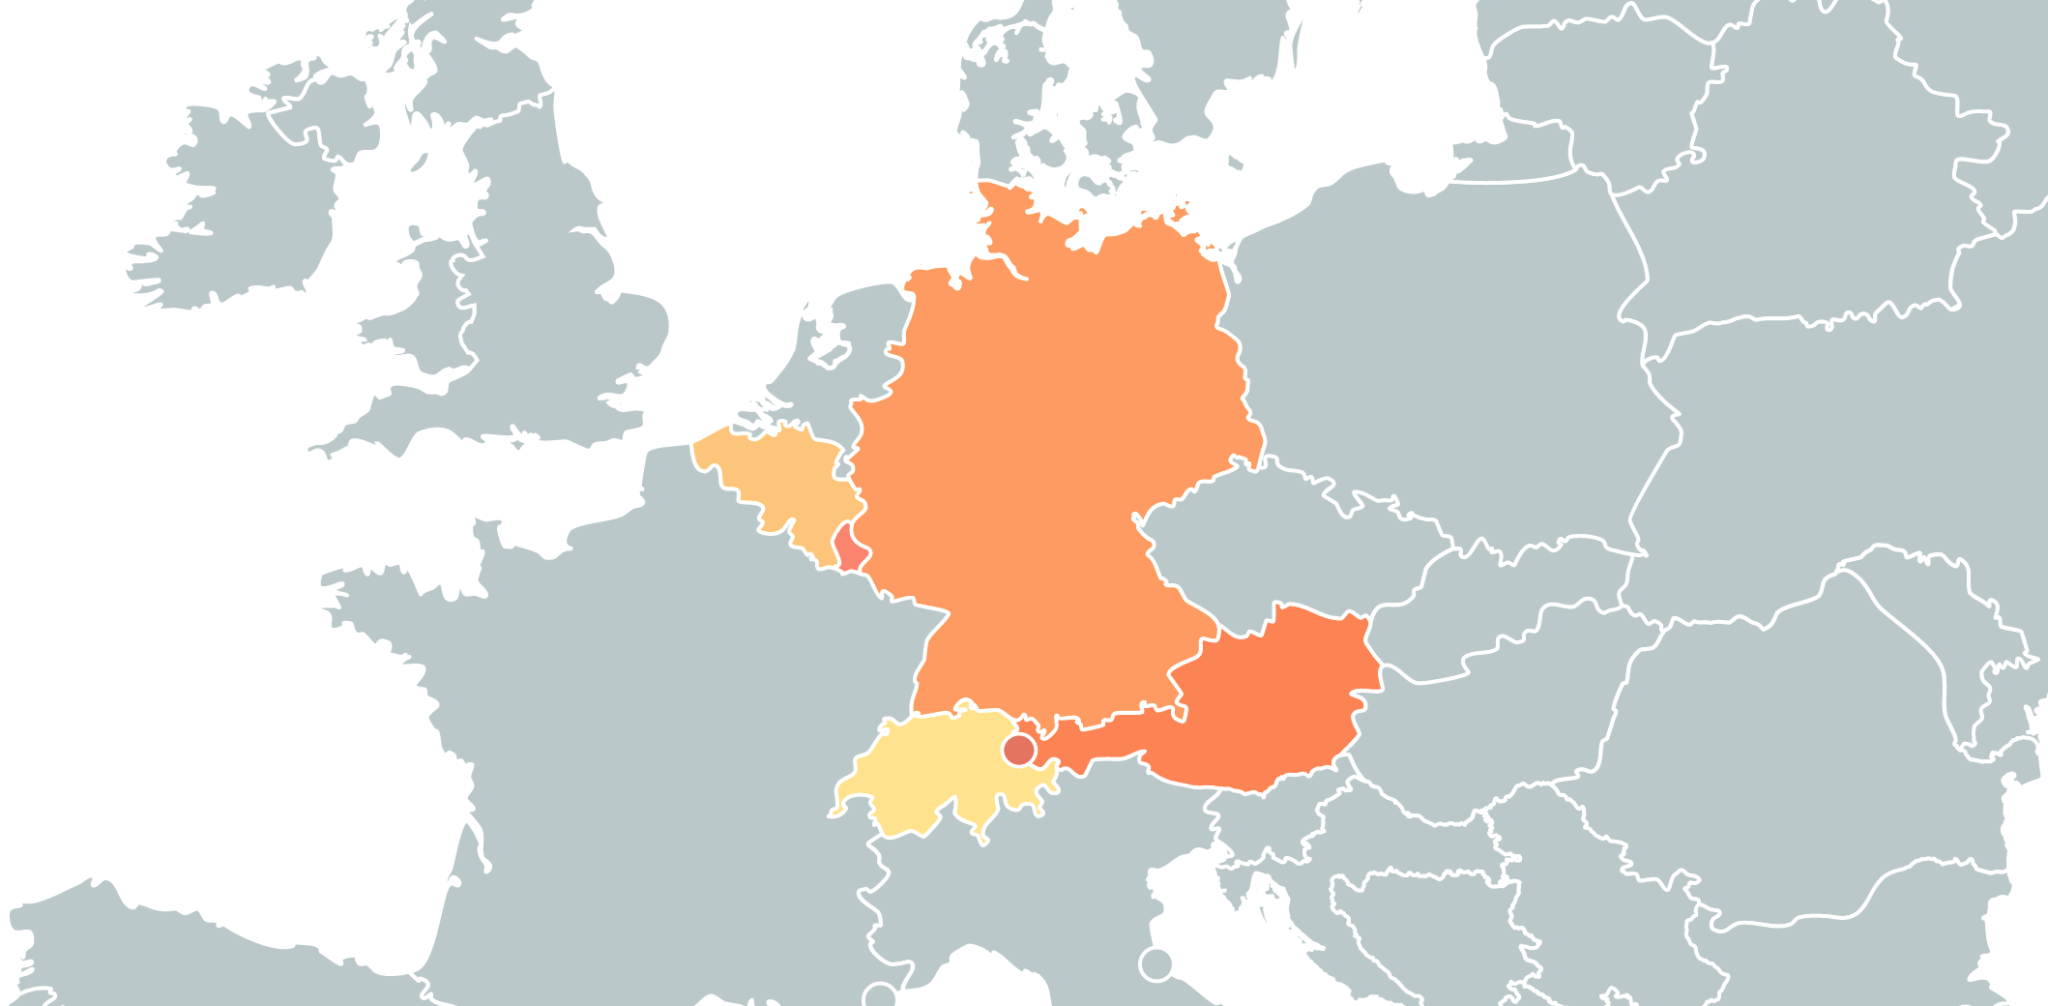 Немецкоговорящих стран. Карта неметско язычных стран. Немецкоговорящие страны в Европе. Немецкоговорящие страны на карте.